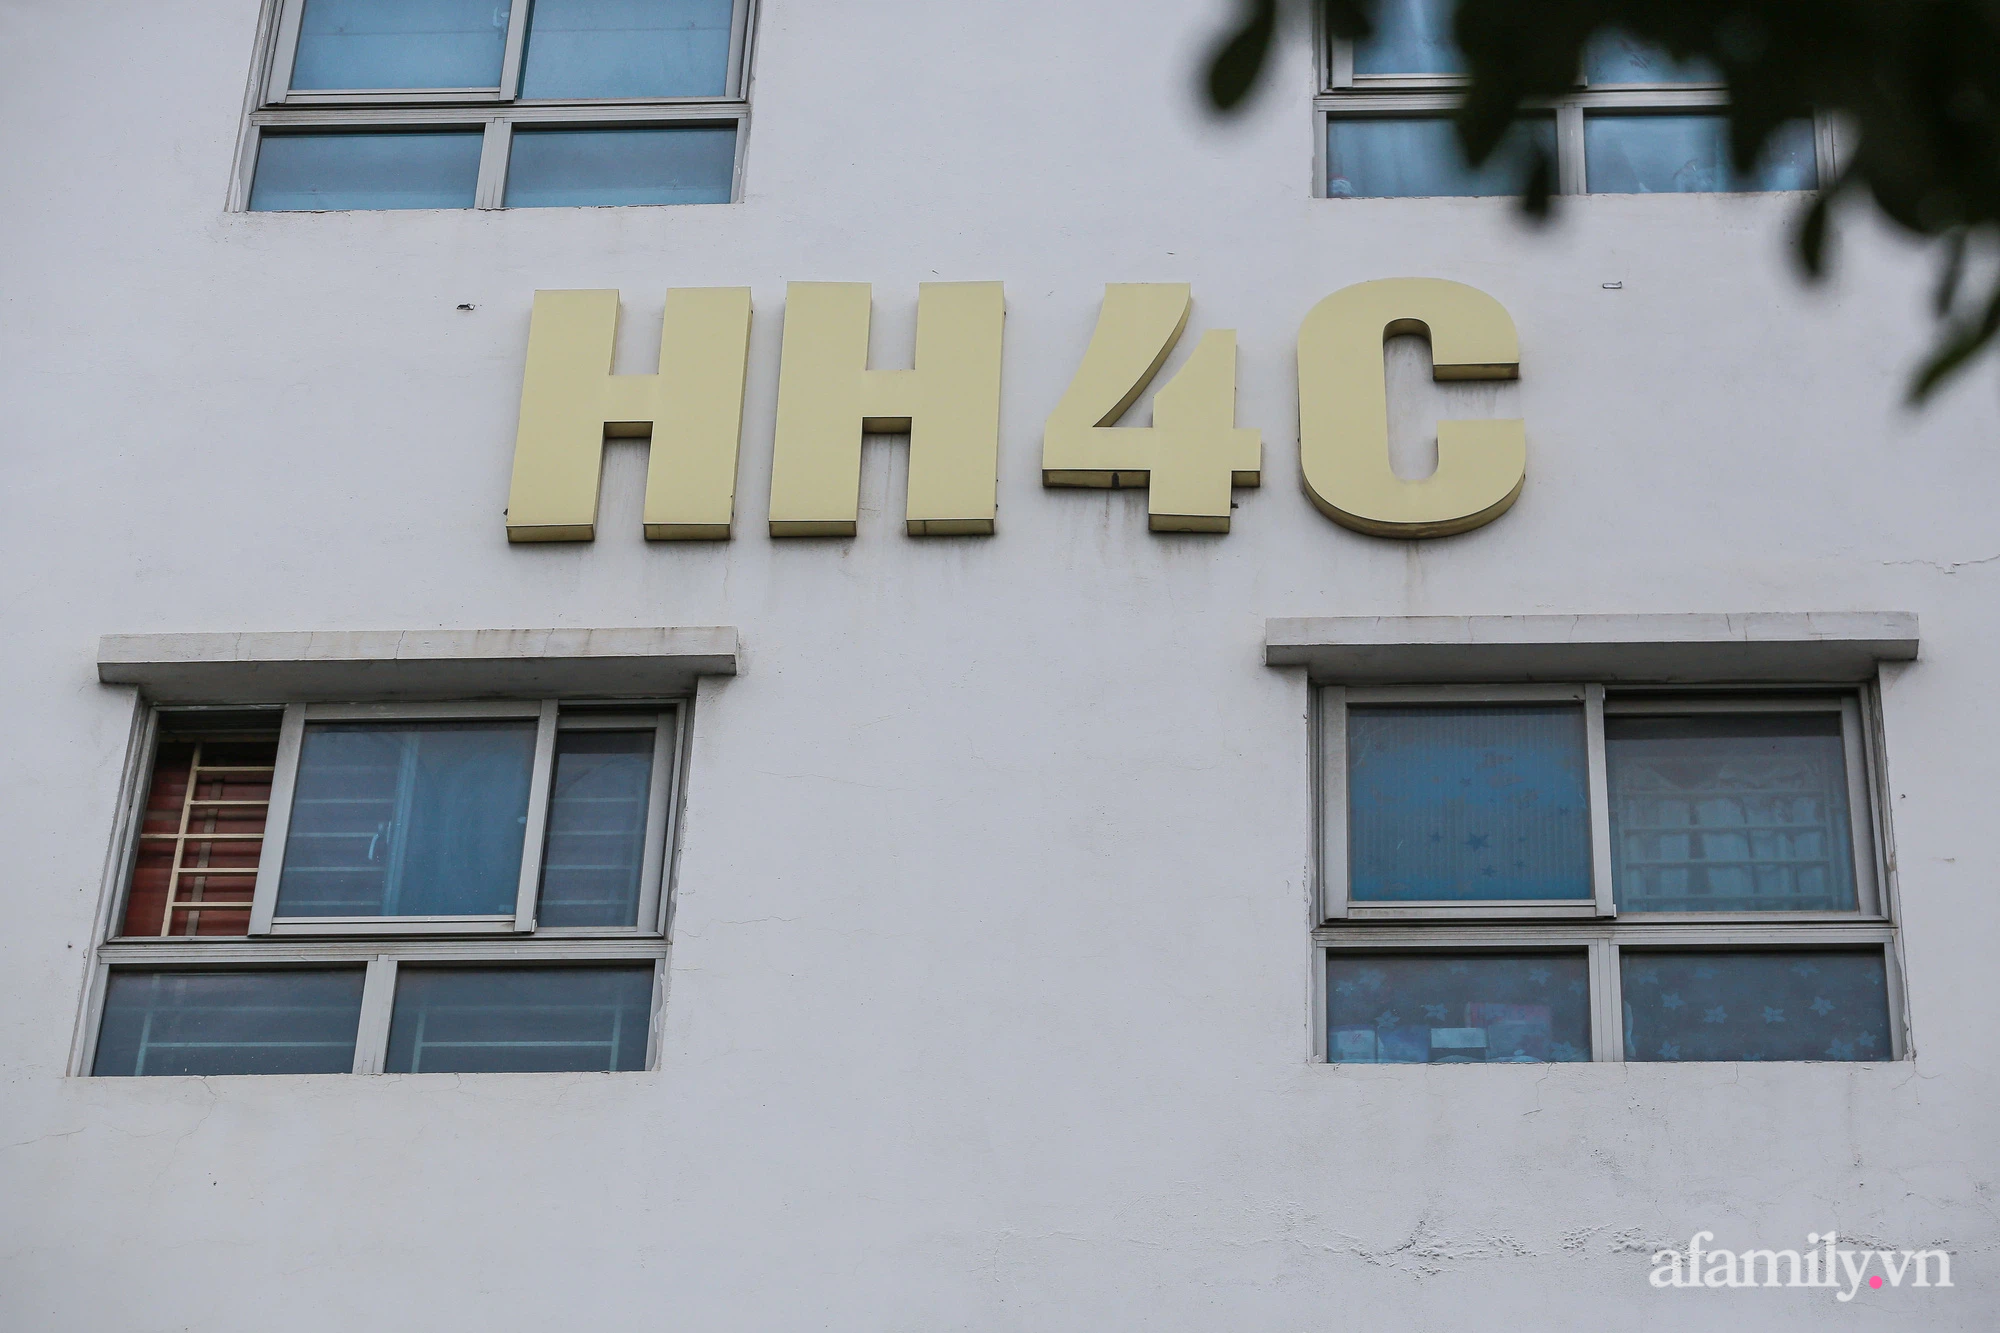 Hà Nội: Phong tỏa tạm thời chung cư HH4C Linh Đàm, thông báo cư dân tạm thời không rời khỏi nơi cư trú - Ảnh 2.